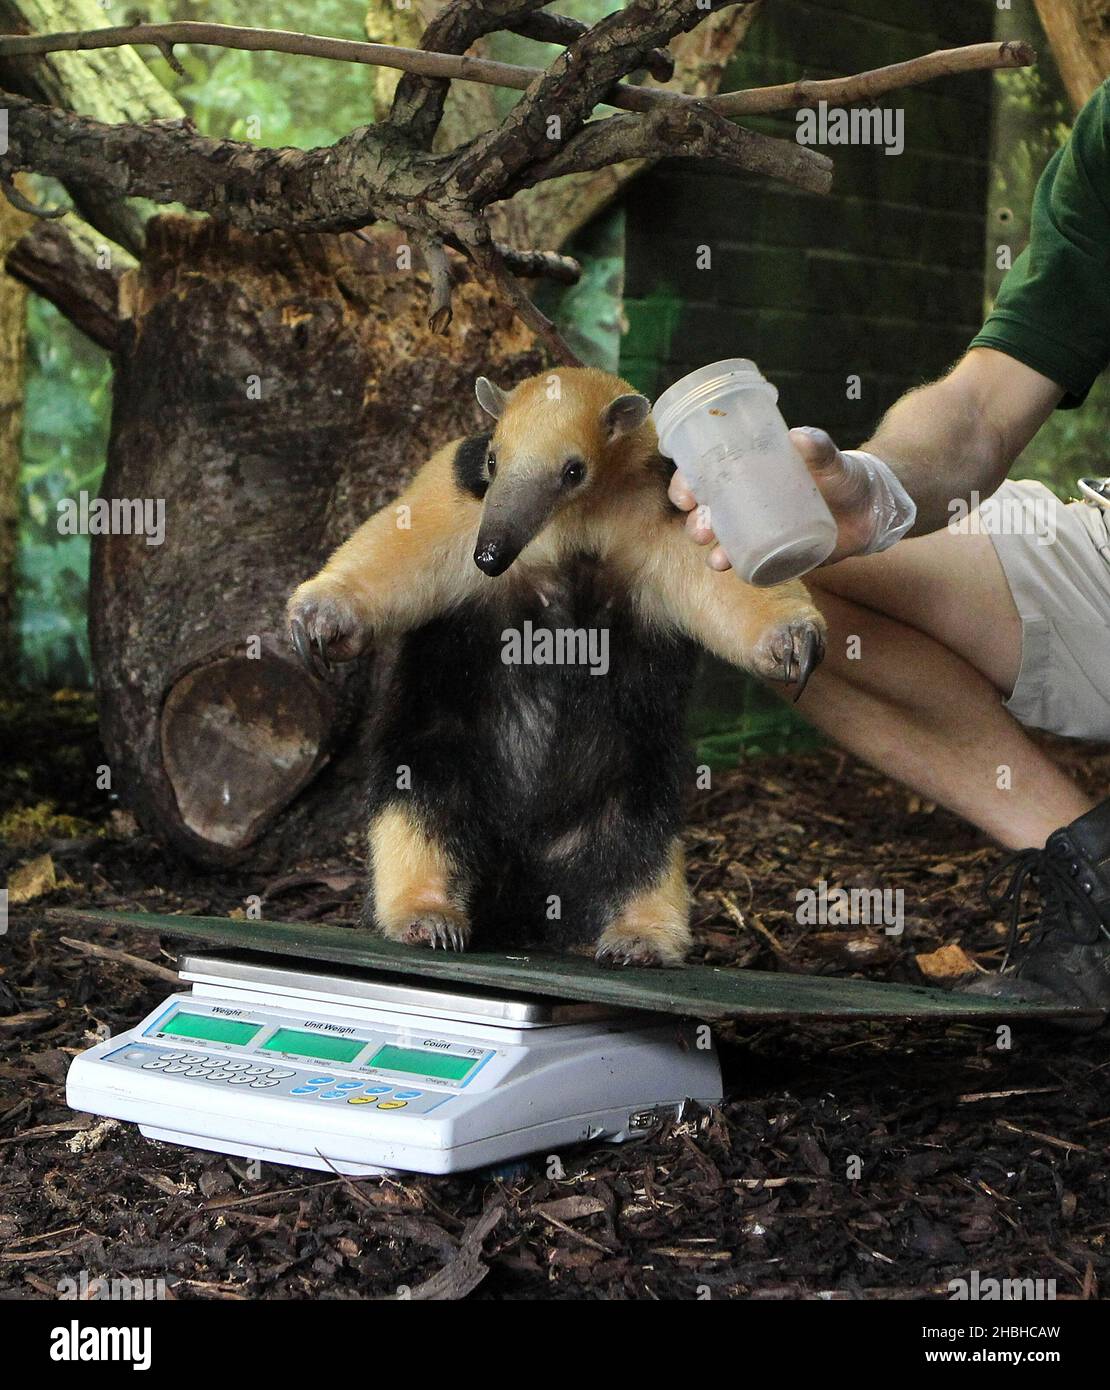 Tammy, der Tree Anteater, sitzt auf einer Reihe elektronischer Waagen und wird während der jährlichen Bestandsaufnahme von Gewichten und Größen im London Zoo im Regents Park im Zentrum von London gewogen. Stockfoto